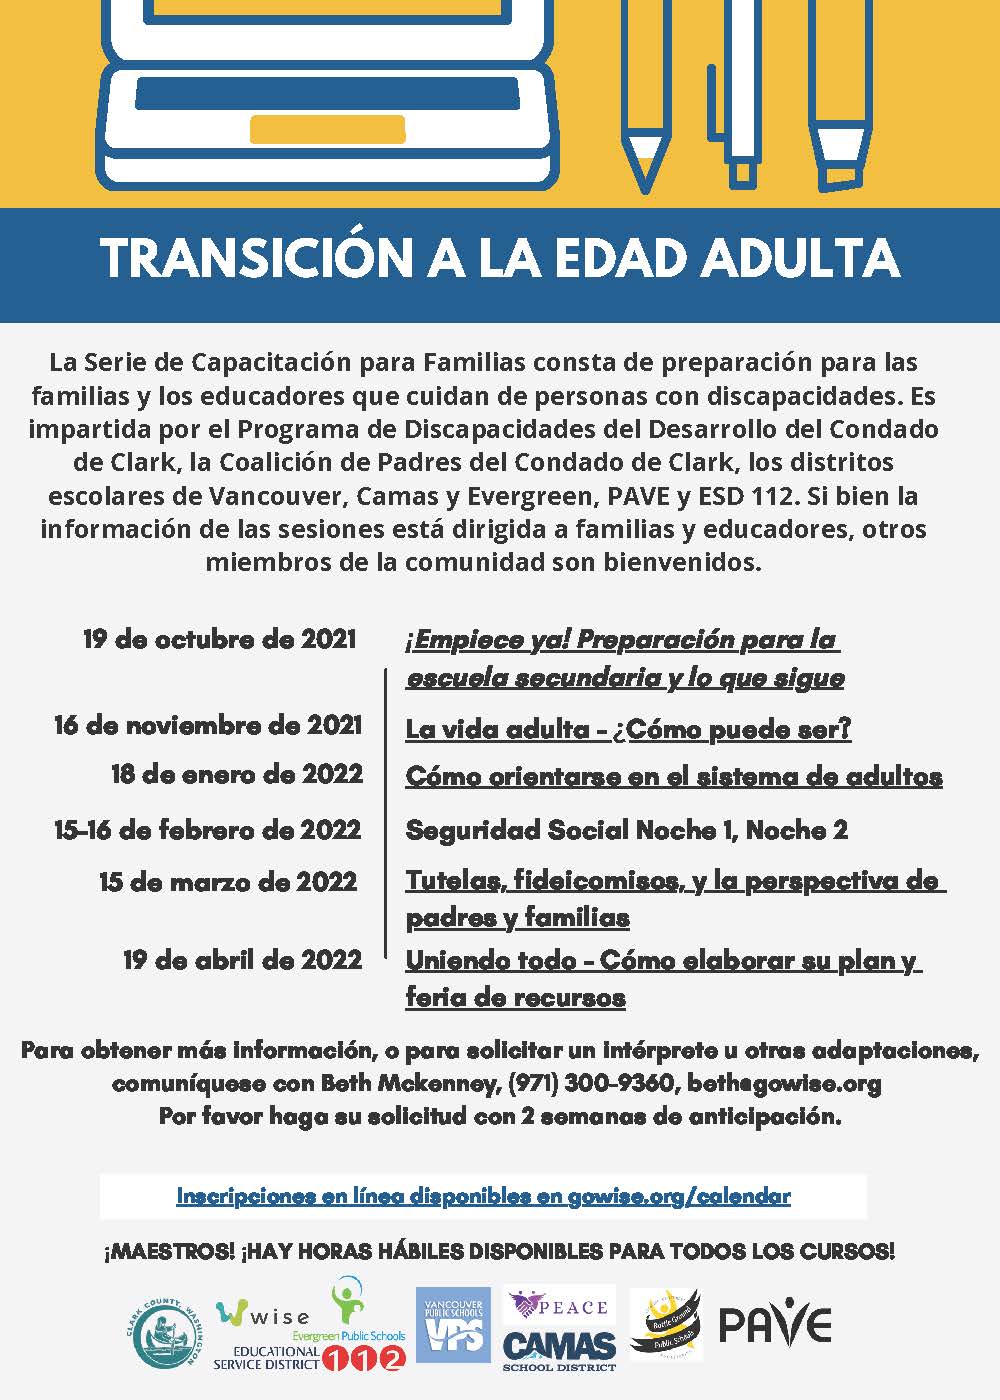 TRANSICIÓN A LA EDAD ADULTA-2021-Update.jpg